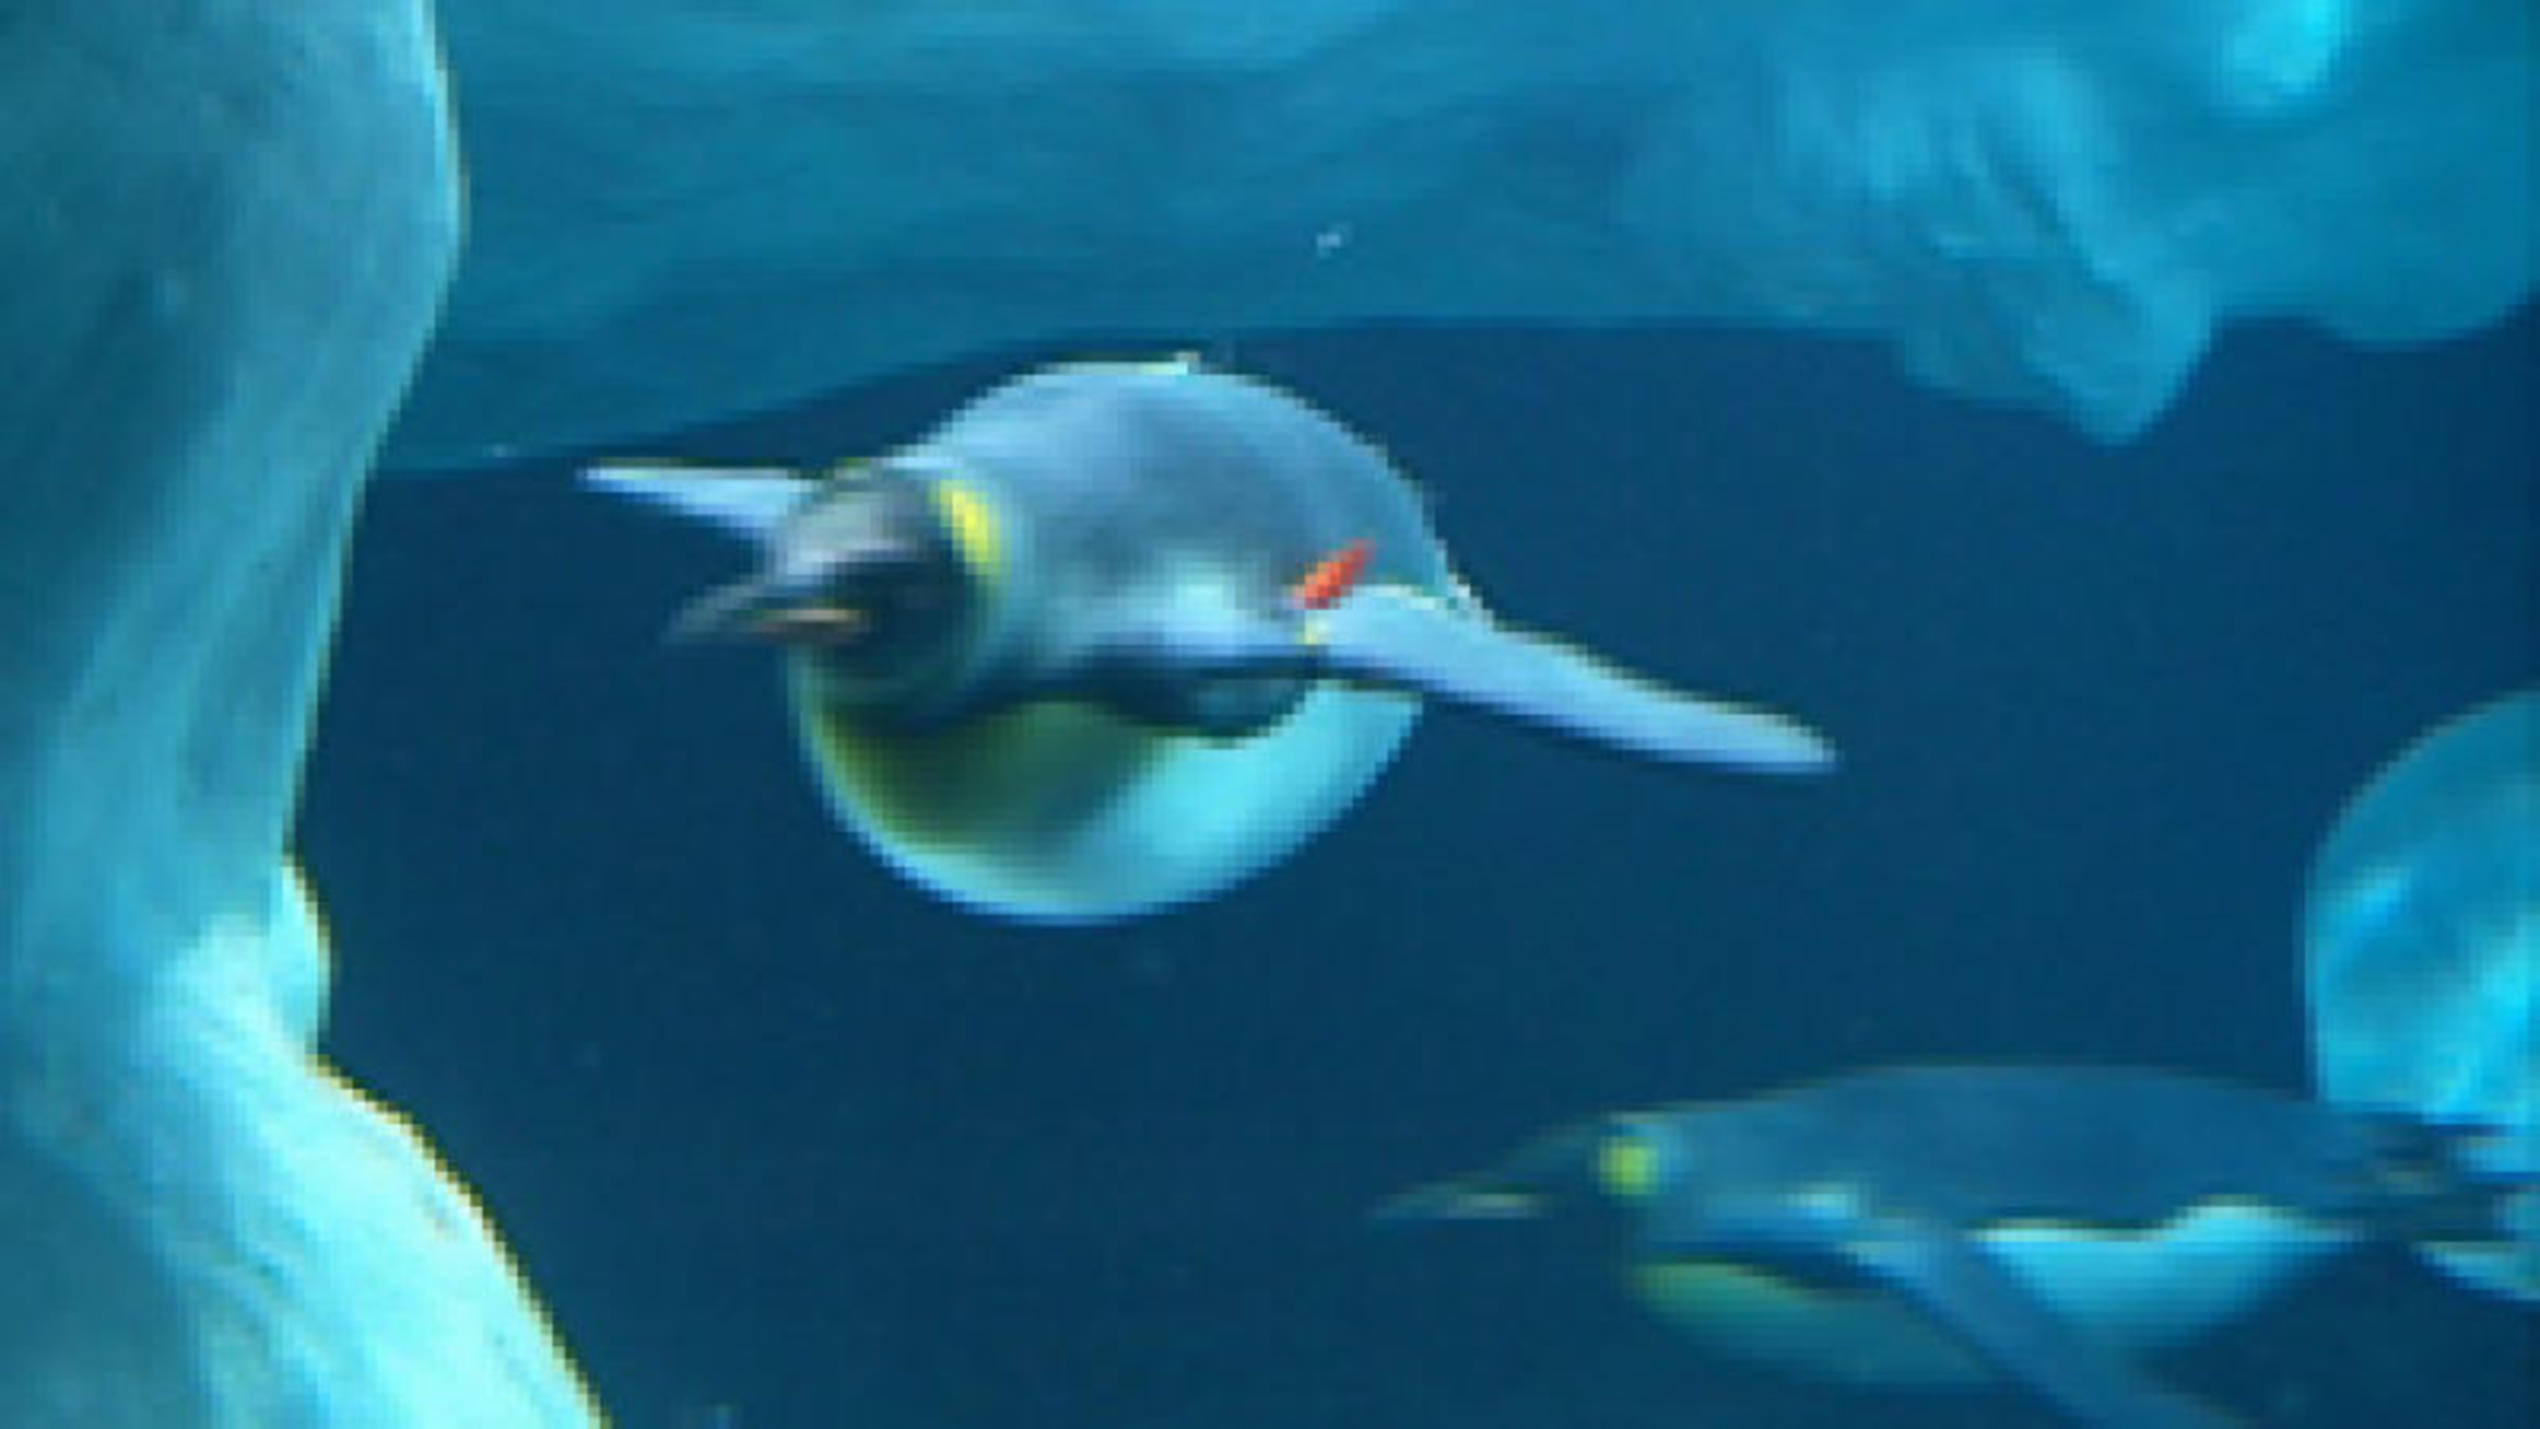 Pinguine auf Teneriffa